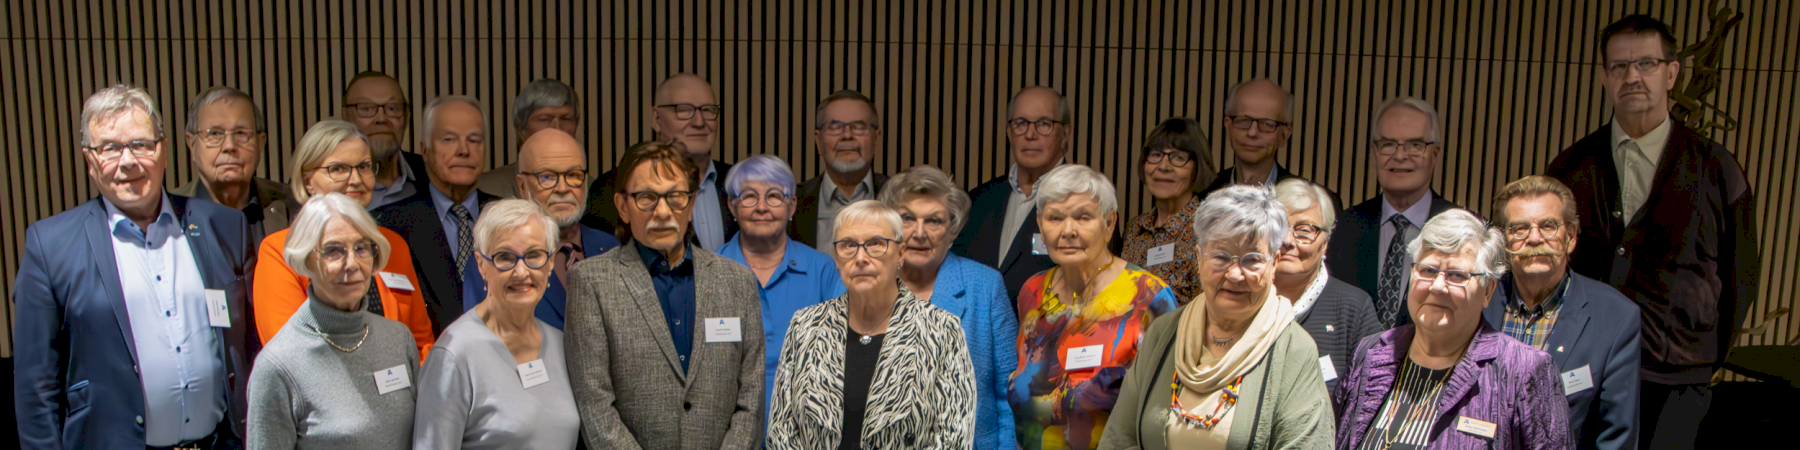 Senioriliiton valtuusto kokoontui kautensa viimeiseen kokoukseen Helsinkiin